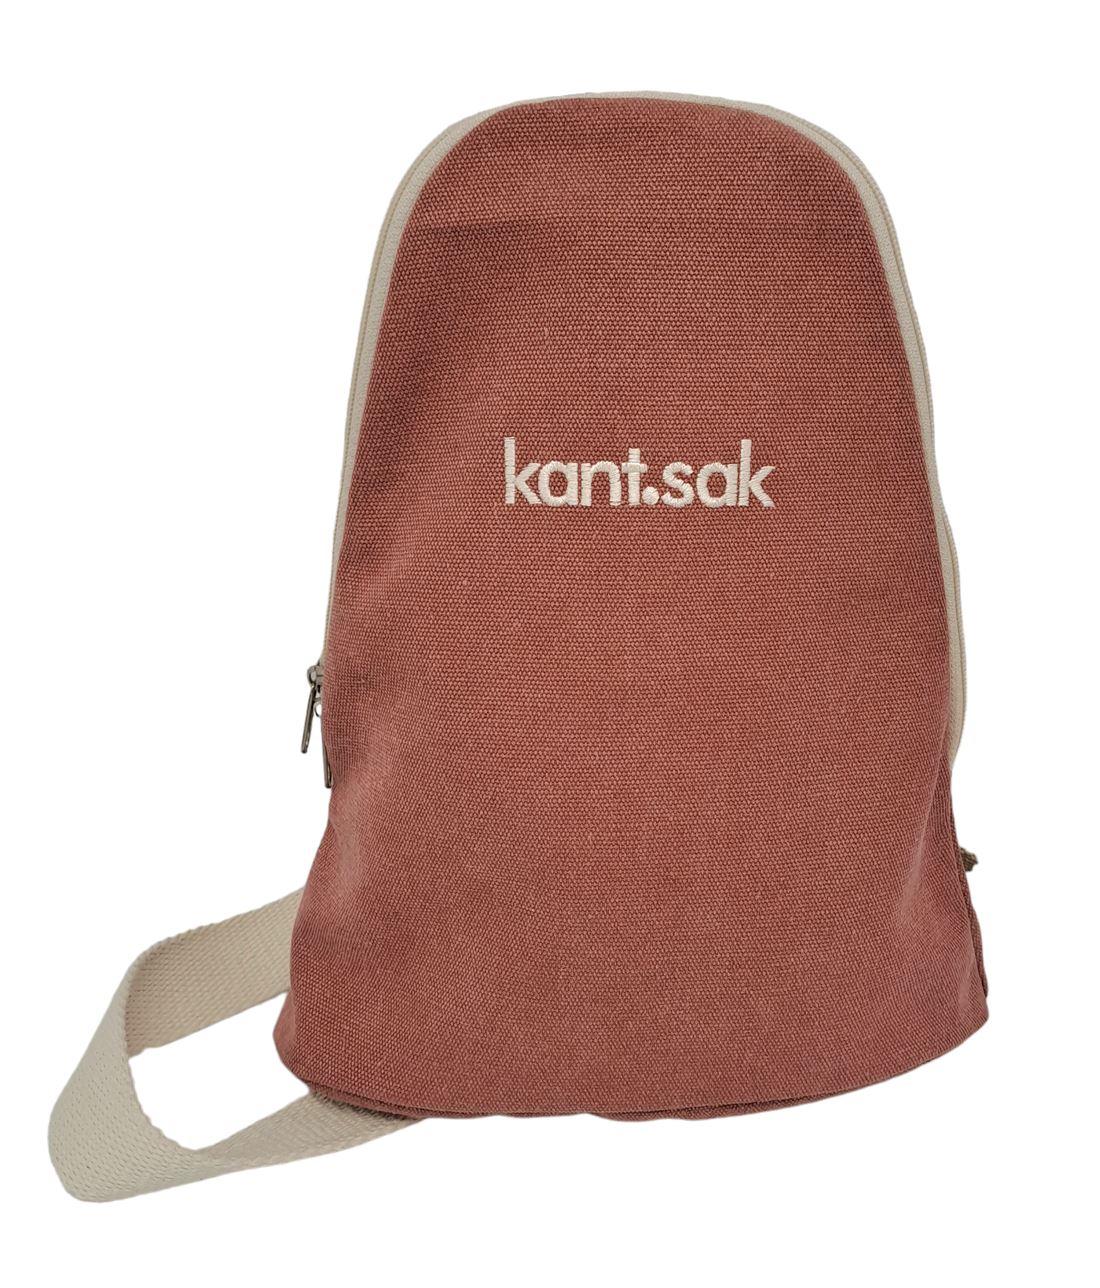 sak.sak Kant Sak - Crossbody Bag Bags & Handbags sak.sak red 